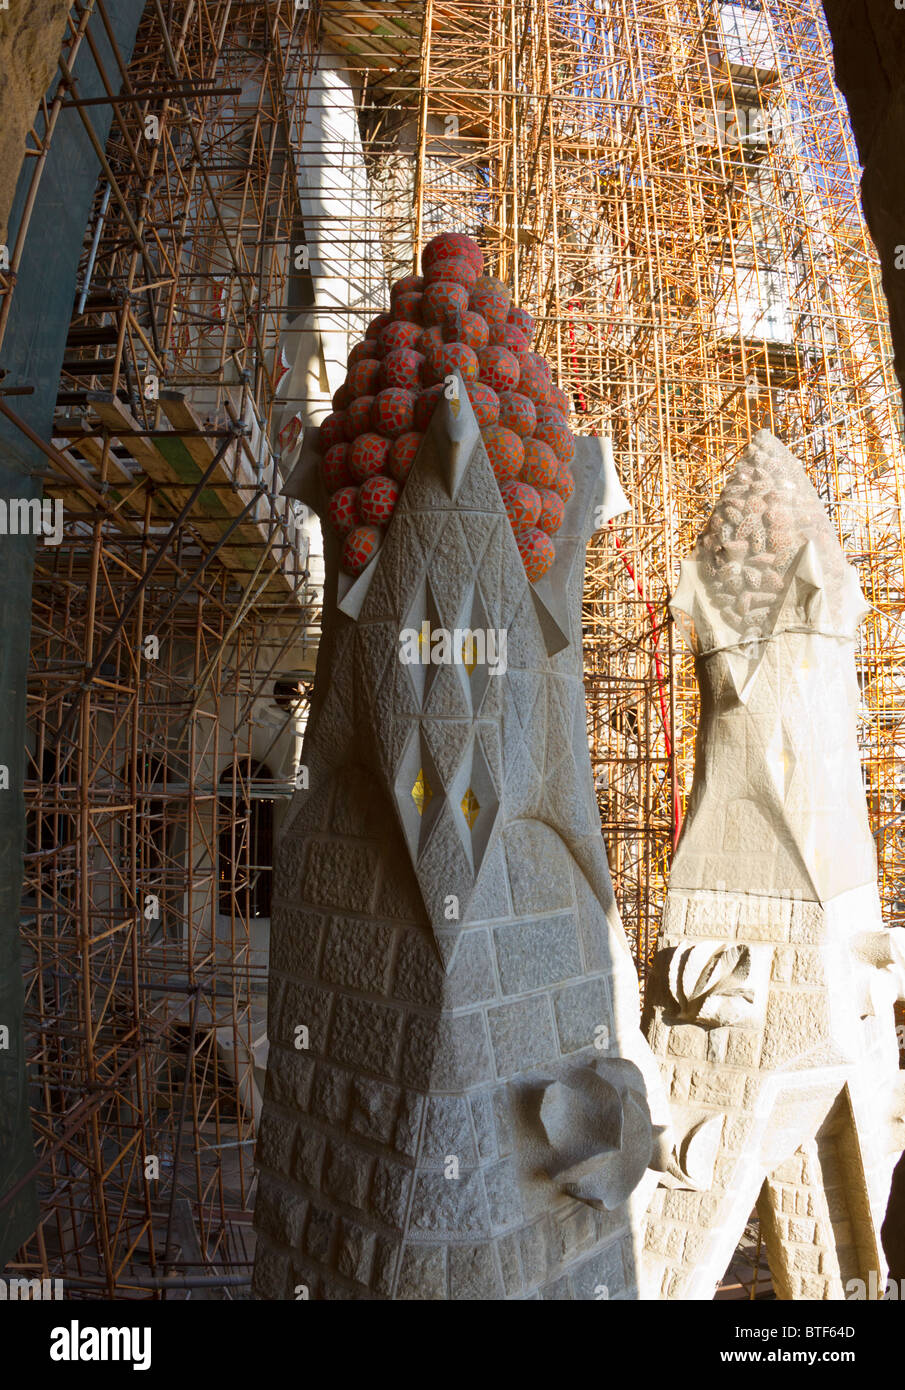 Cathédrale de la Sagrada Familia de Gaudi montrant pinnacles inspiré par des fruits, une image aux couleurs vives, et l'échafaudage derrière Banque D'Images